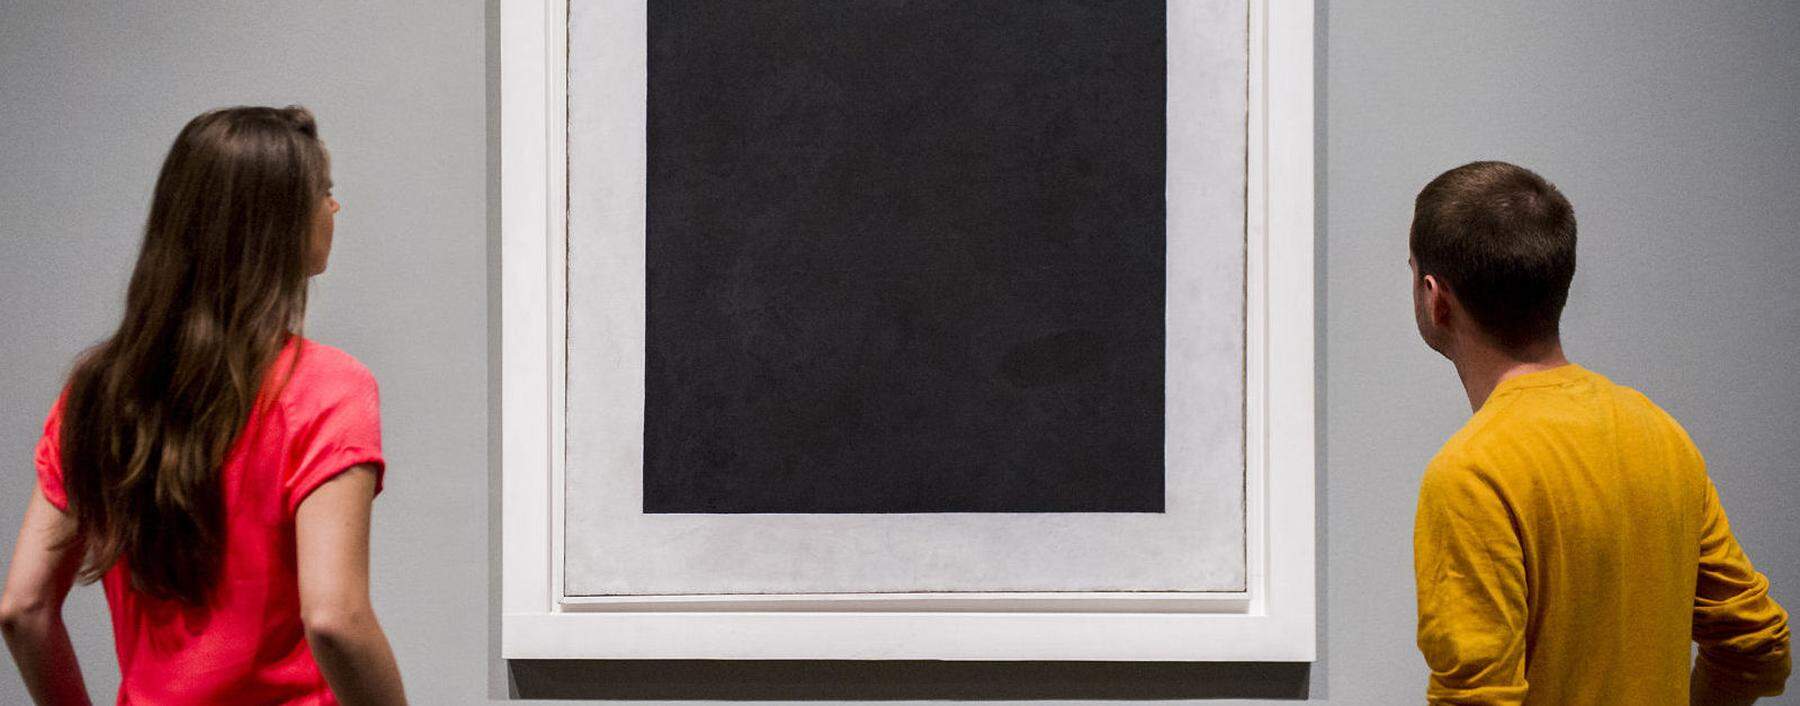 Etwas darstellen heißt, sich zu weigern, etwas anderes darzustellen: Malewitschs „Schwarzes Quadrat“, 1915. 